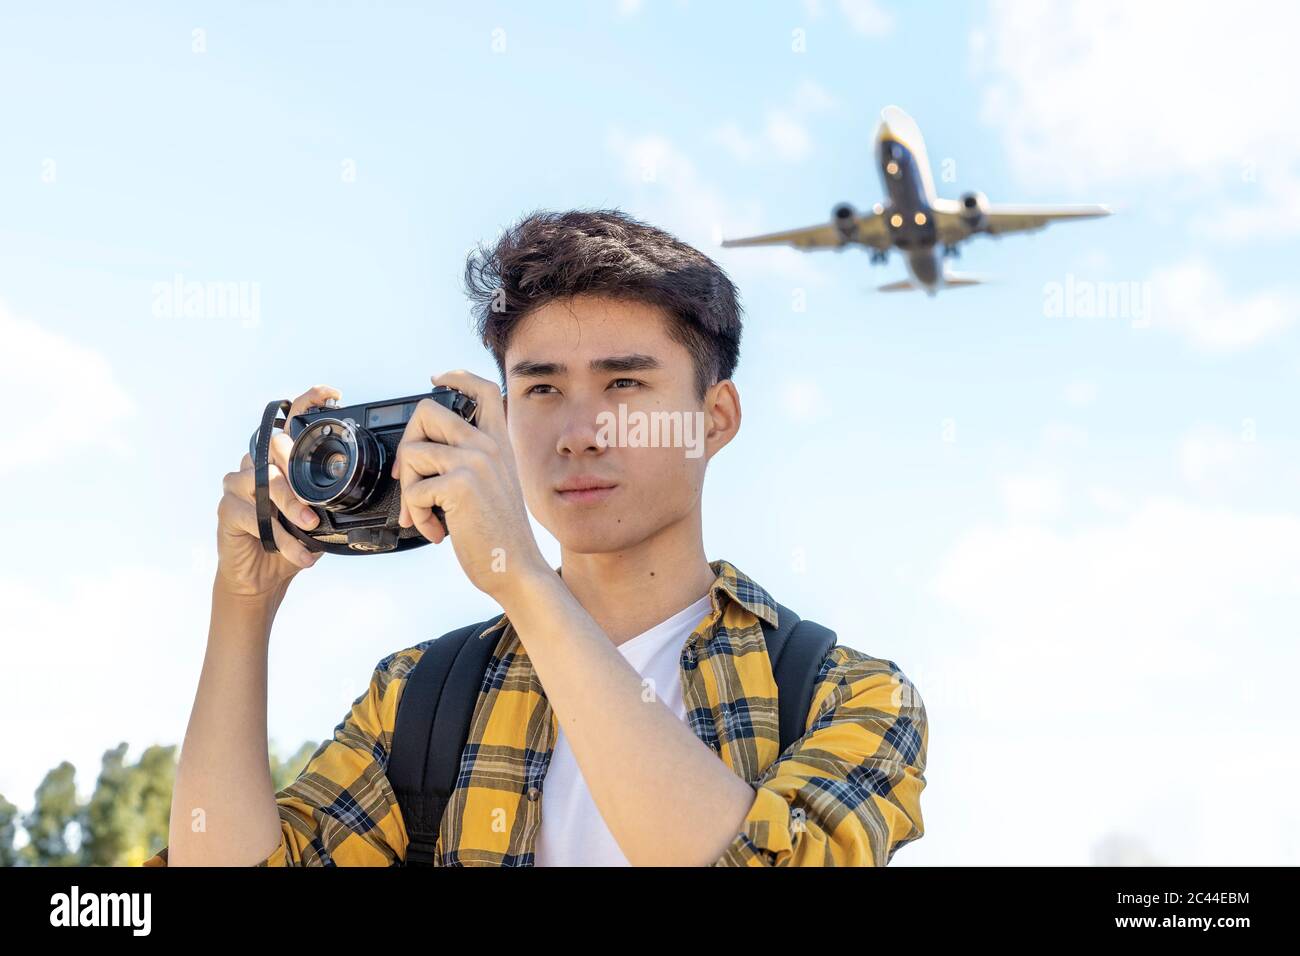 Ritratto di giovane turista con macchina fotografica con aereo sopra di lui Foto Stock